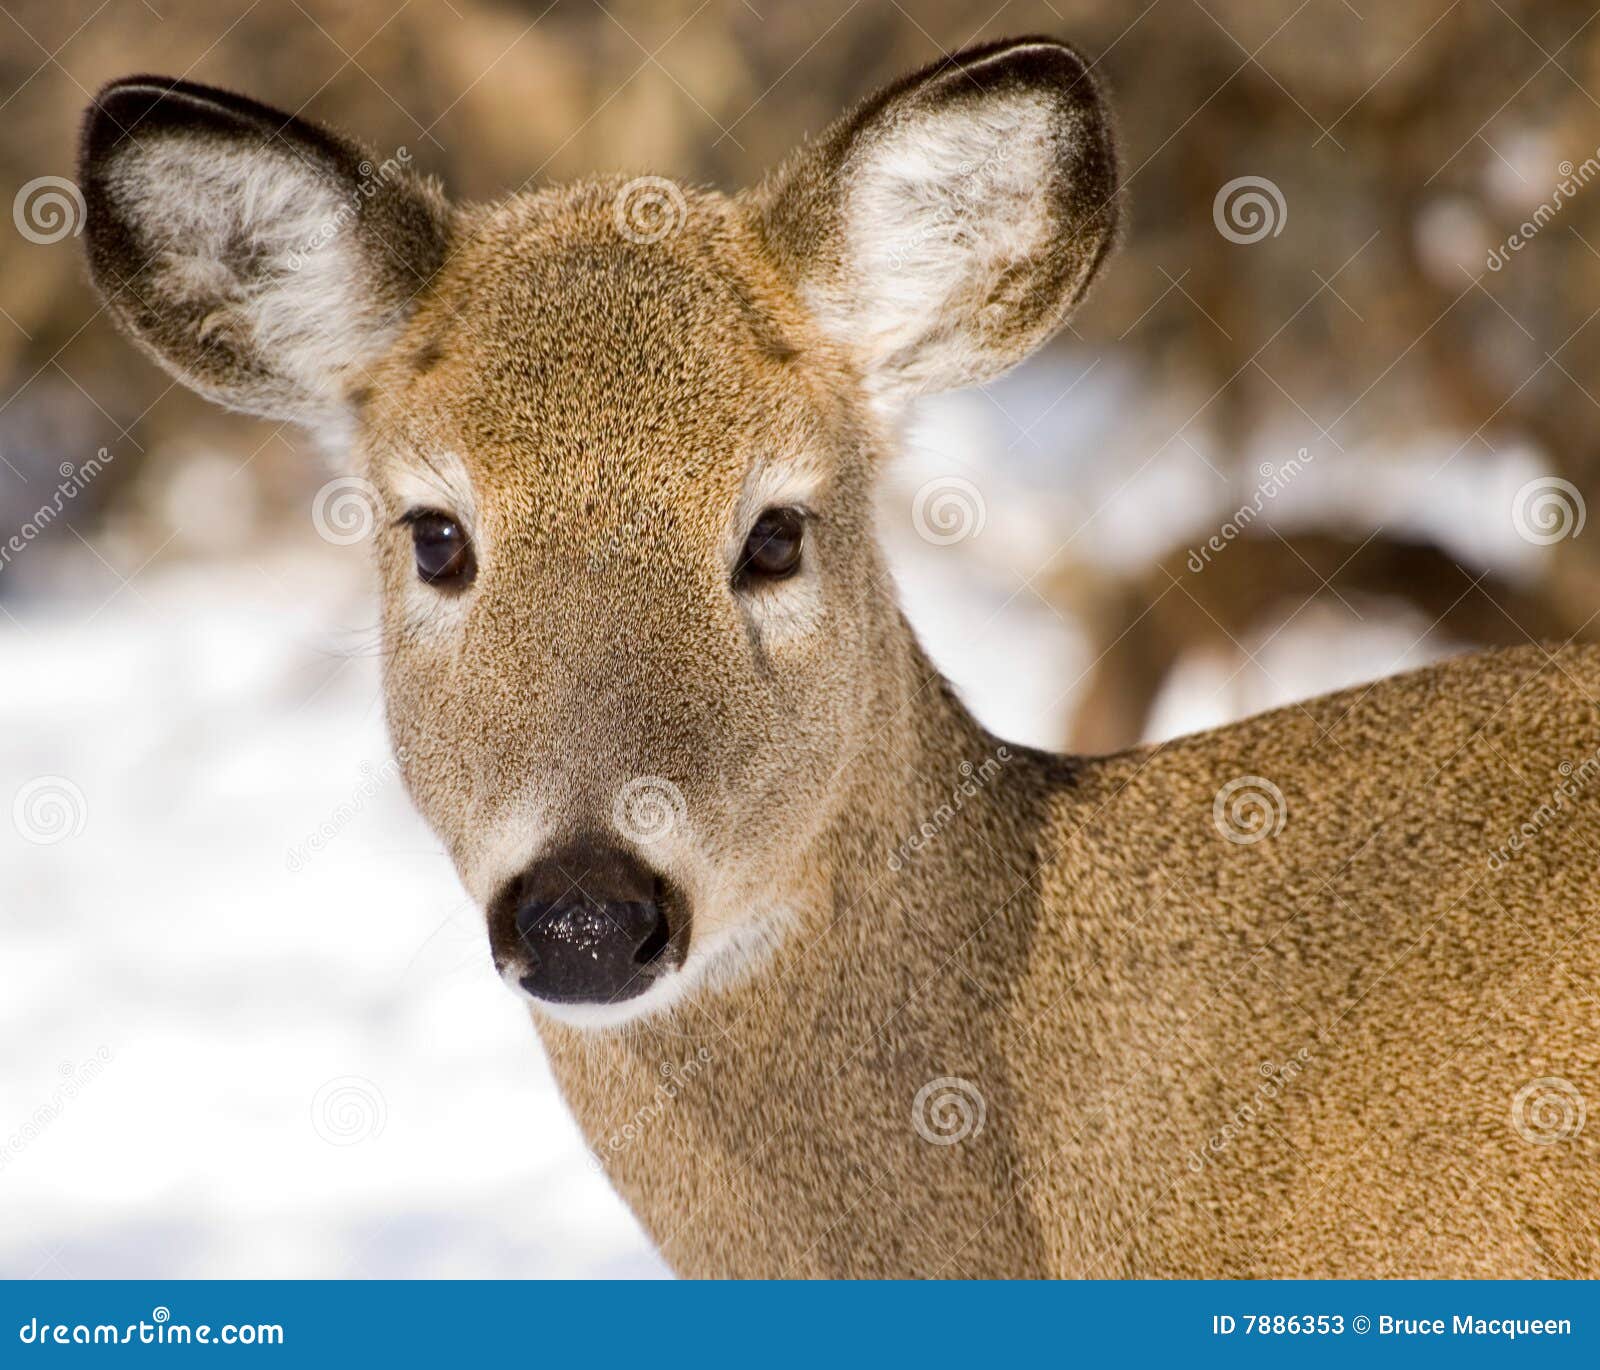 whitetail deer doe closeup